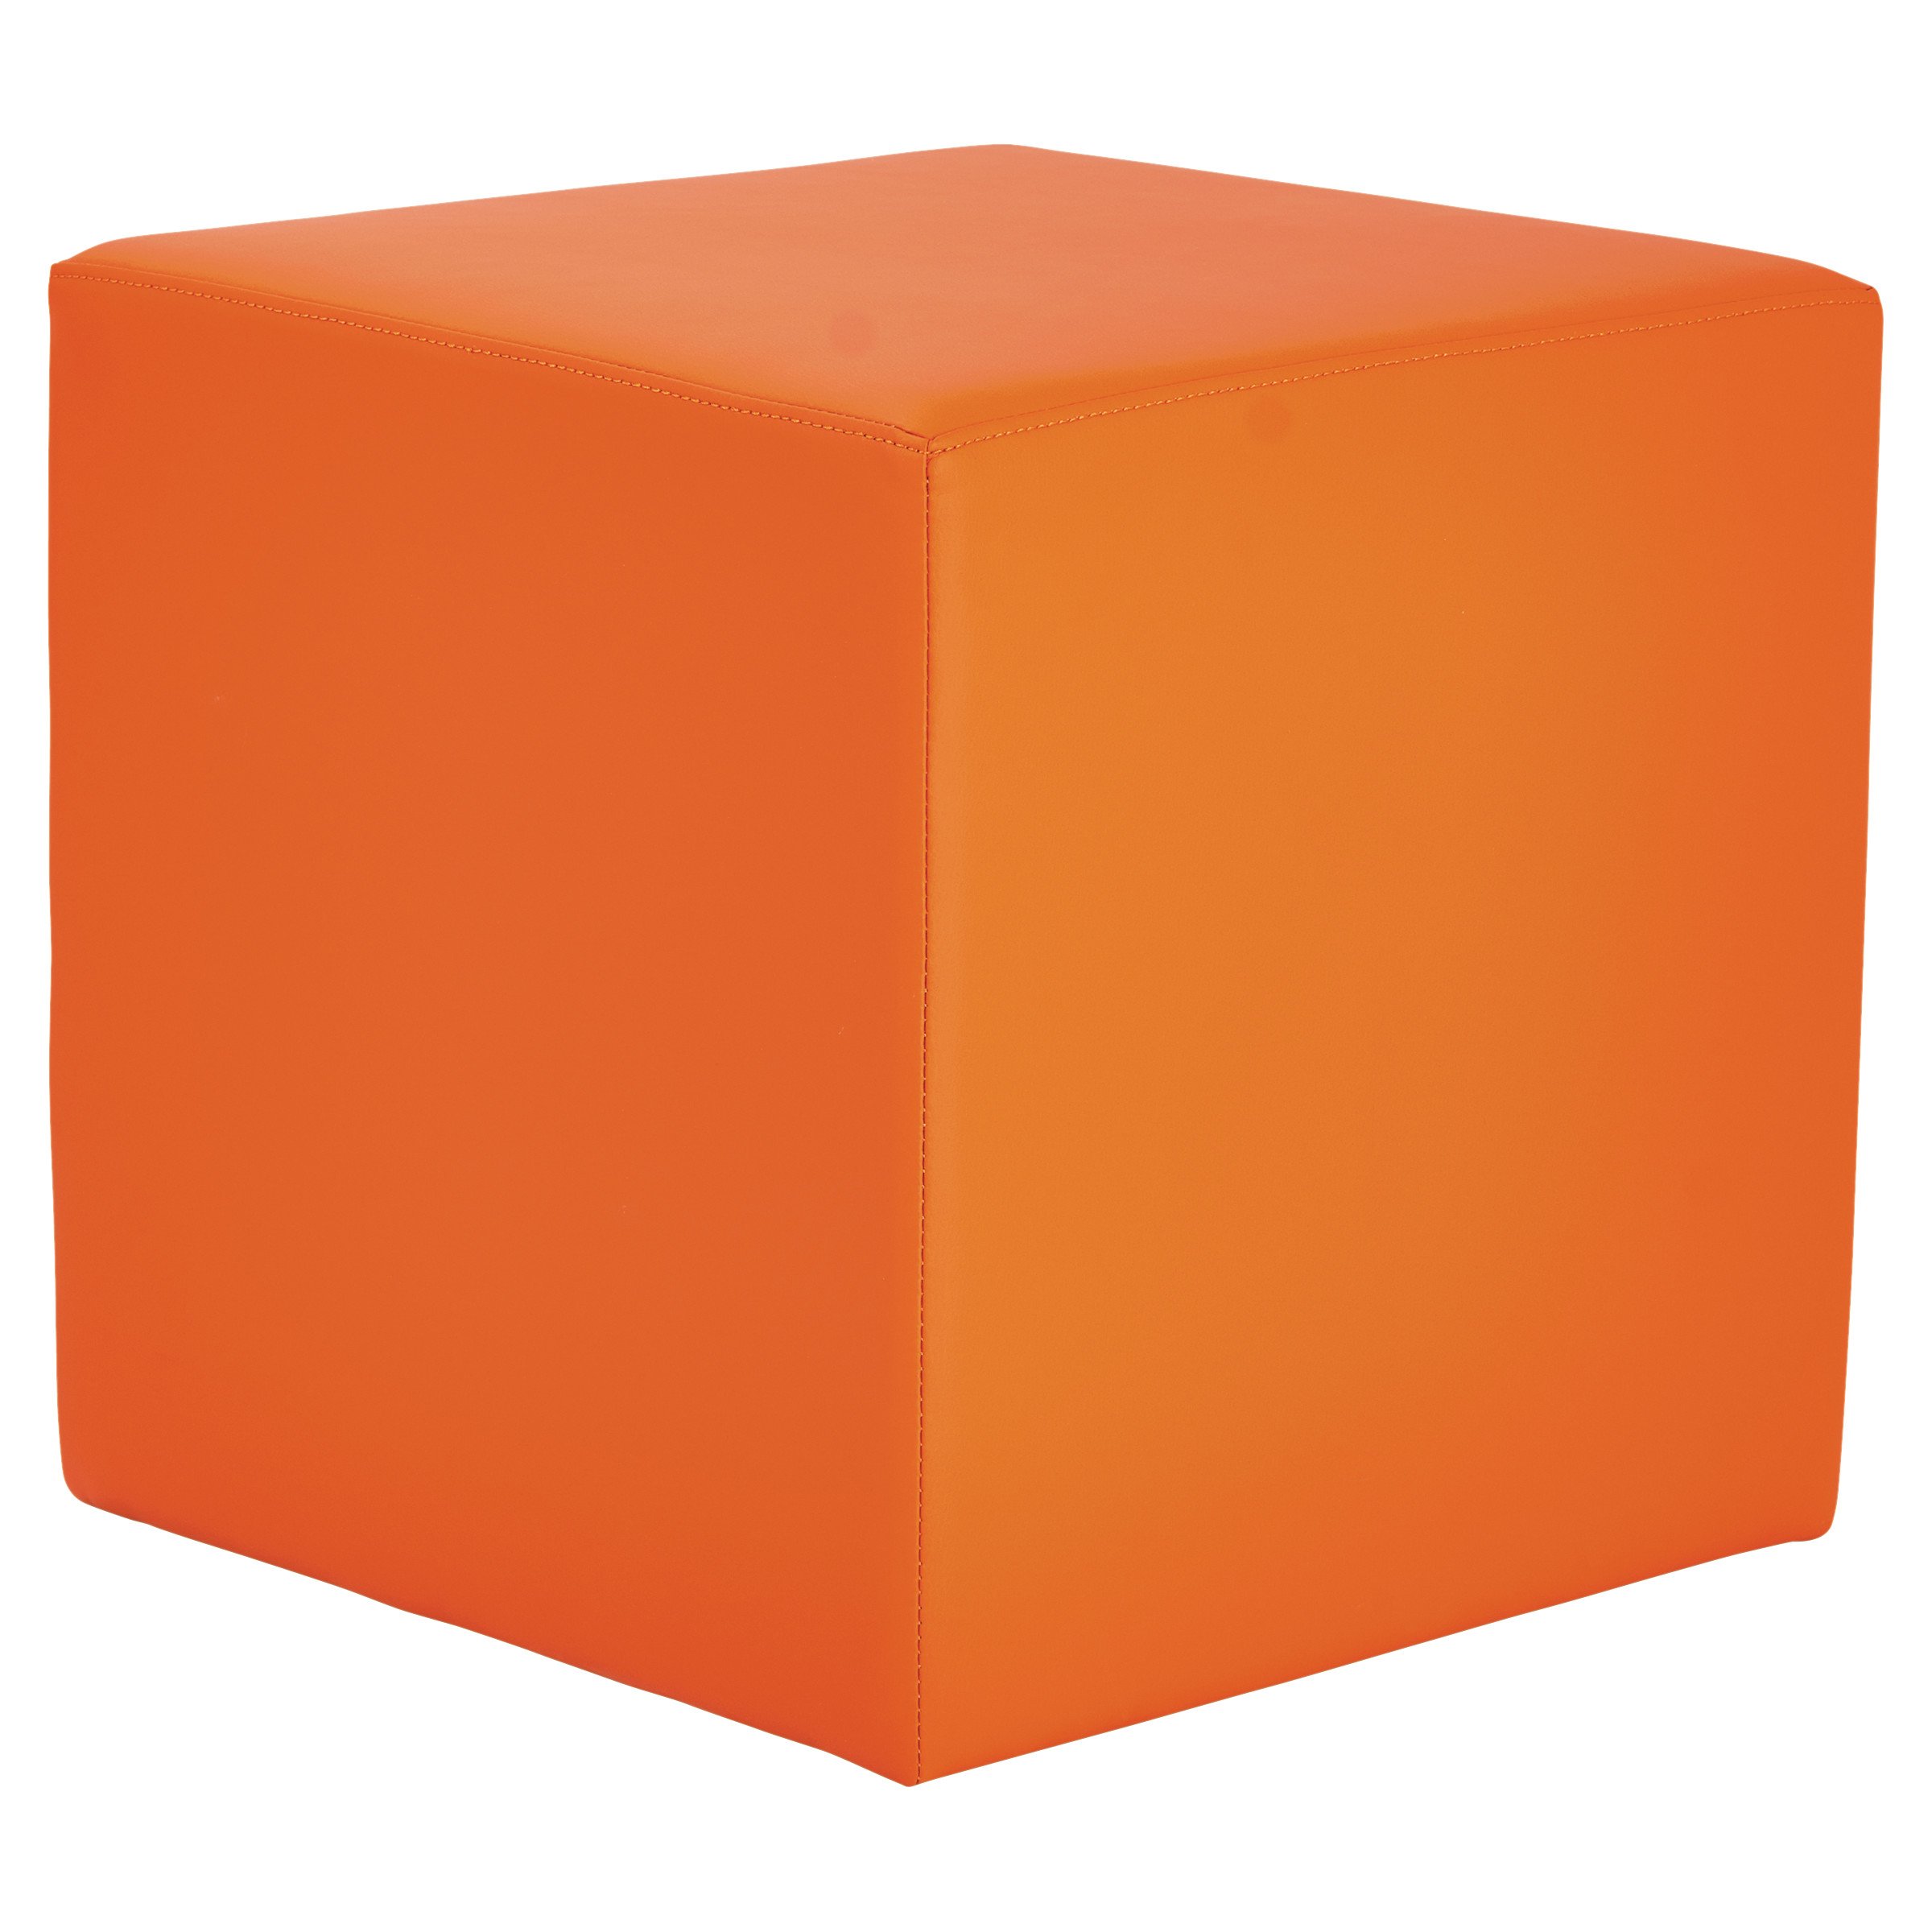 Reg kz. Куб. Уб. Пластмассовый куб. Пластмассовый куб большой.